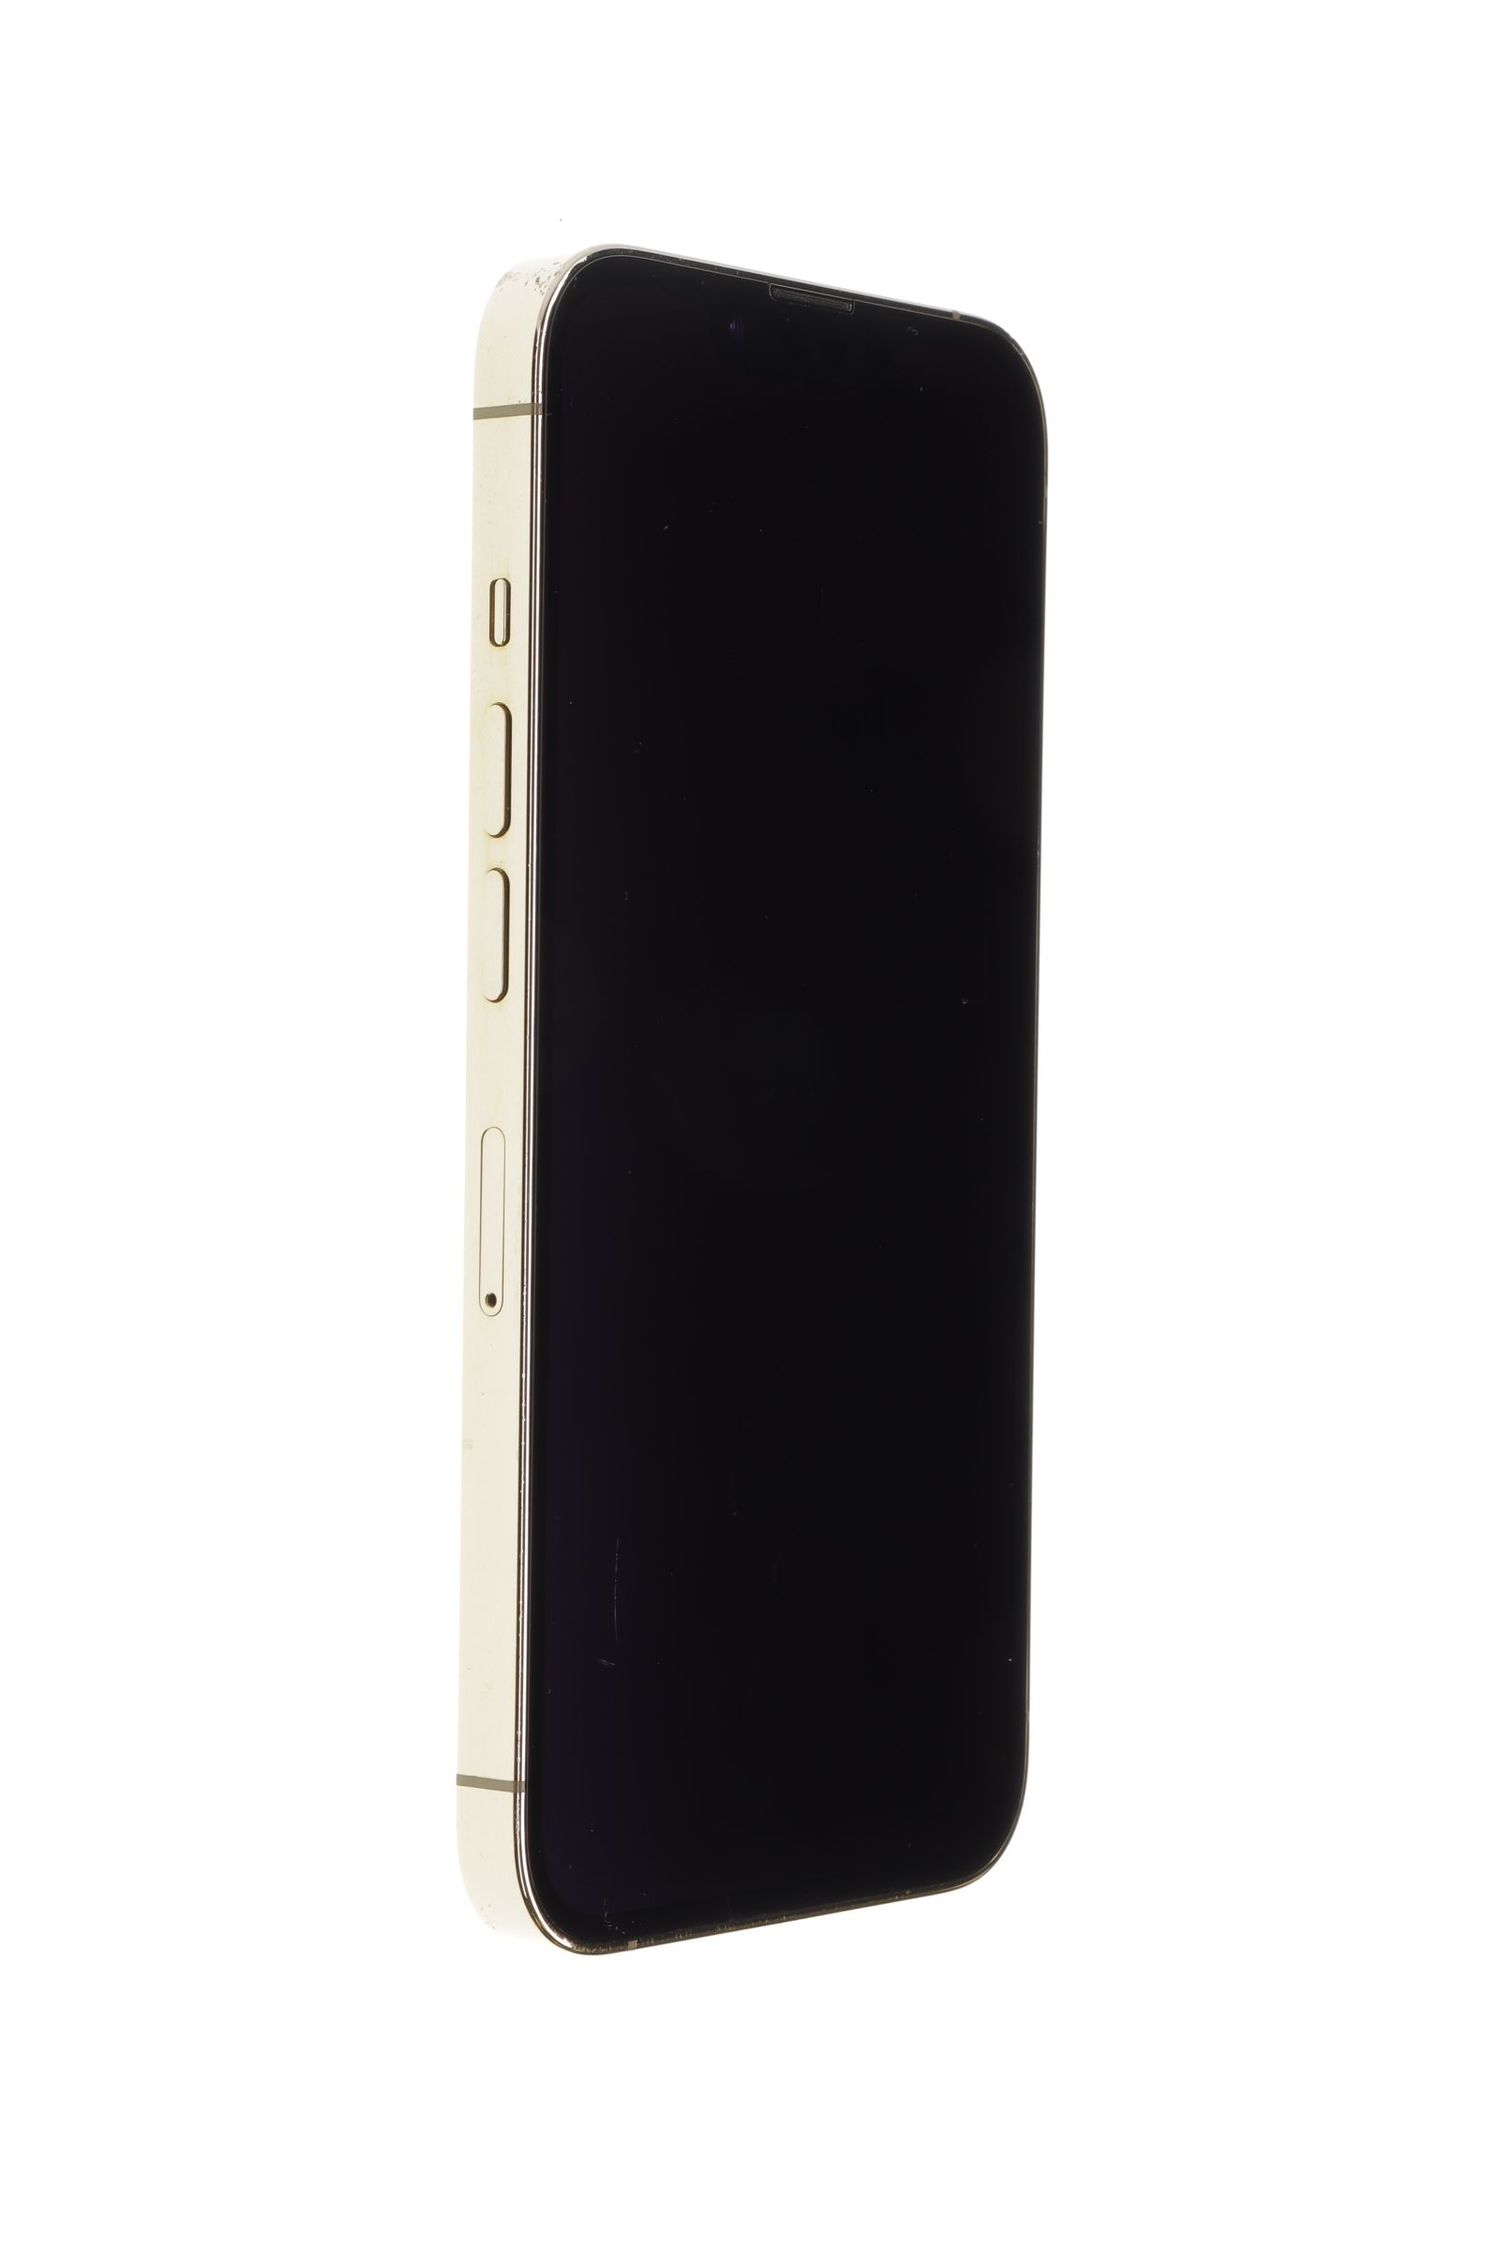 Мобилен телефон Apple iPhone 13 Pro, Gold, 128 GB, Excelent